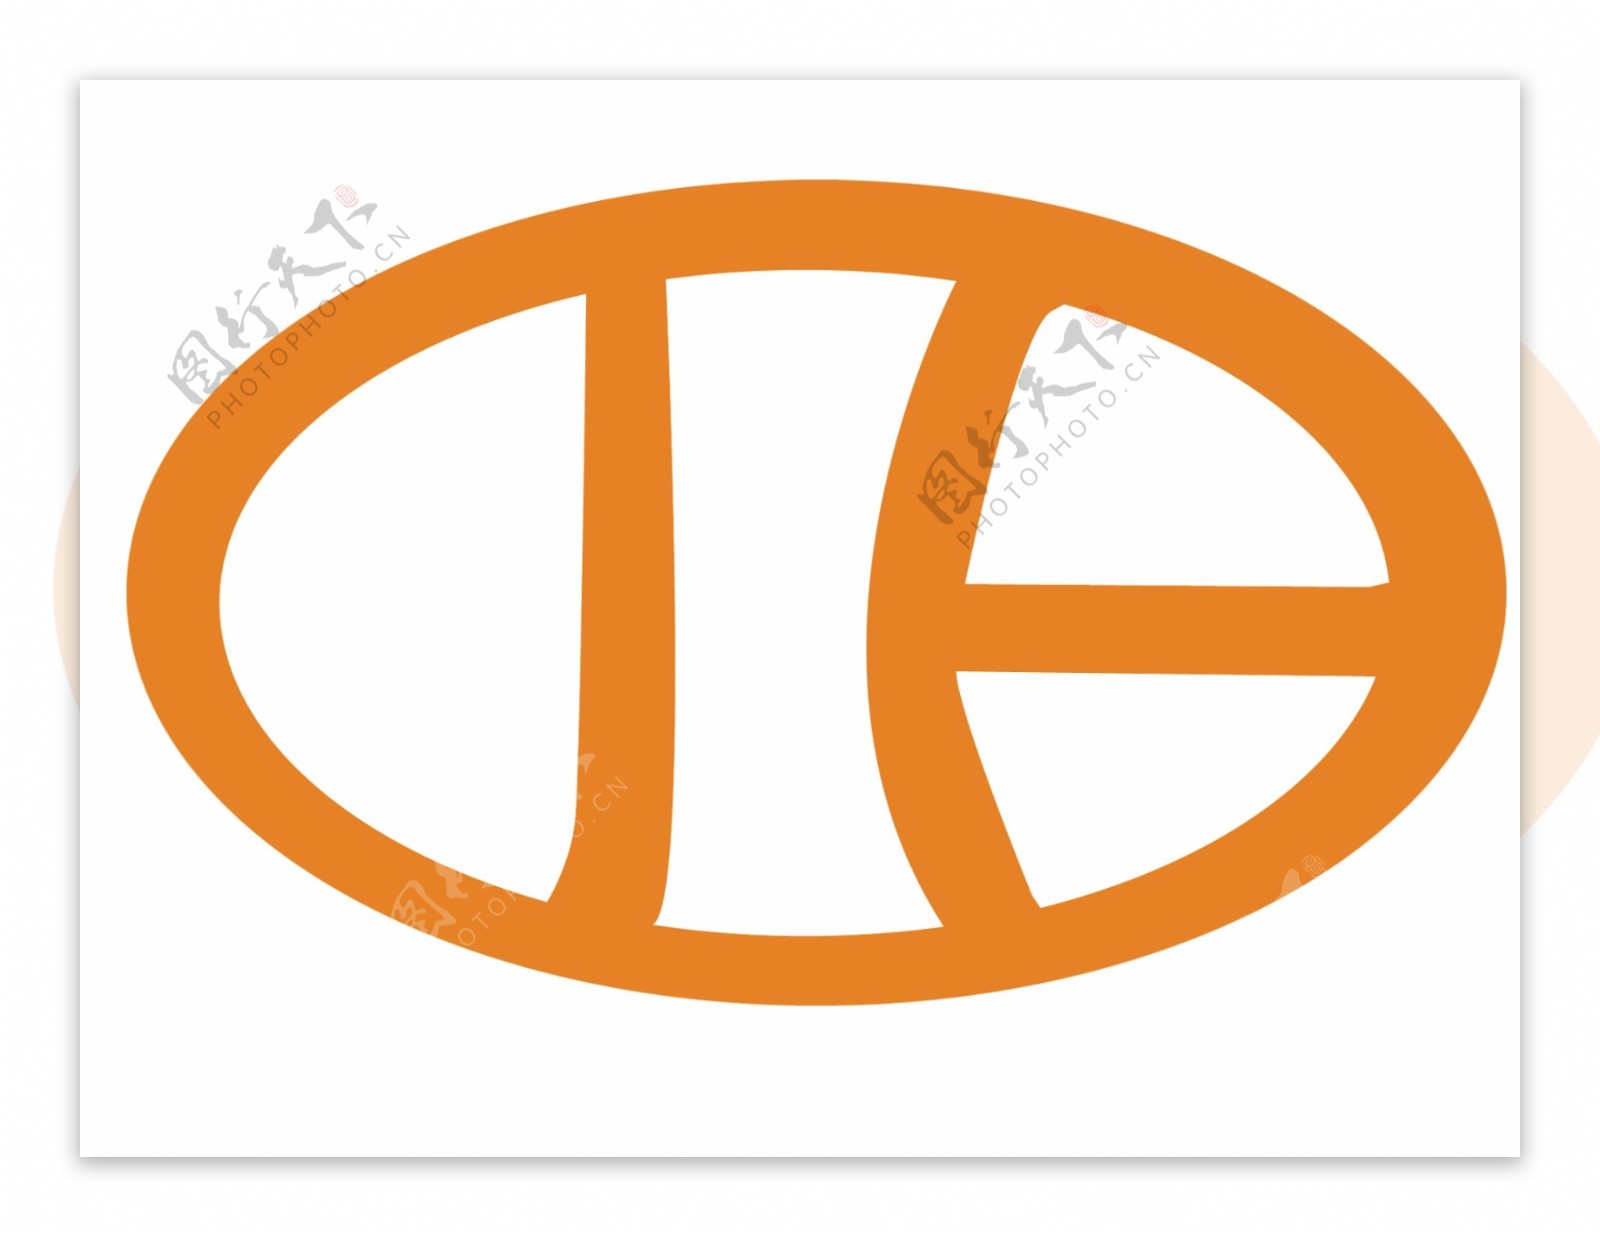 洁宝机械logo图片